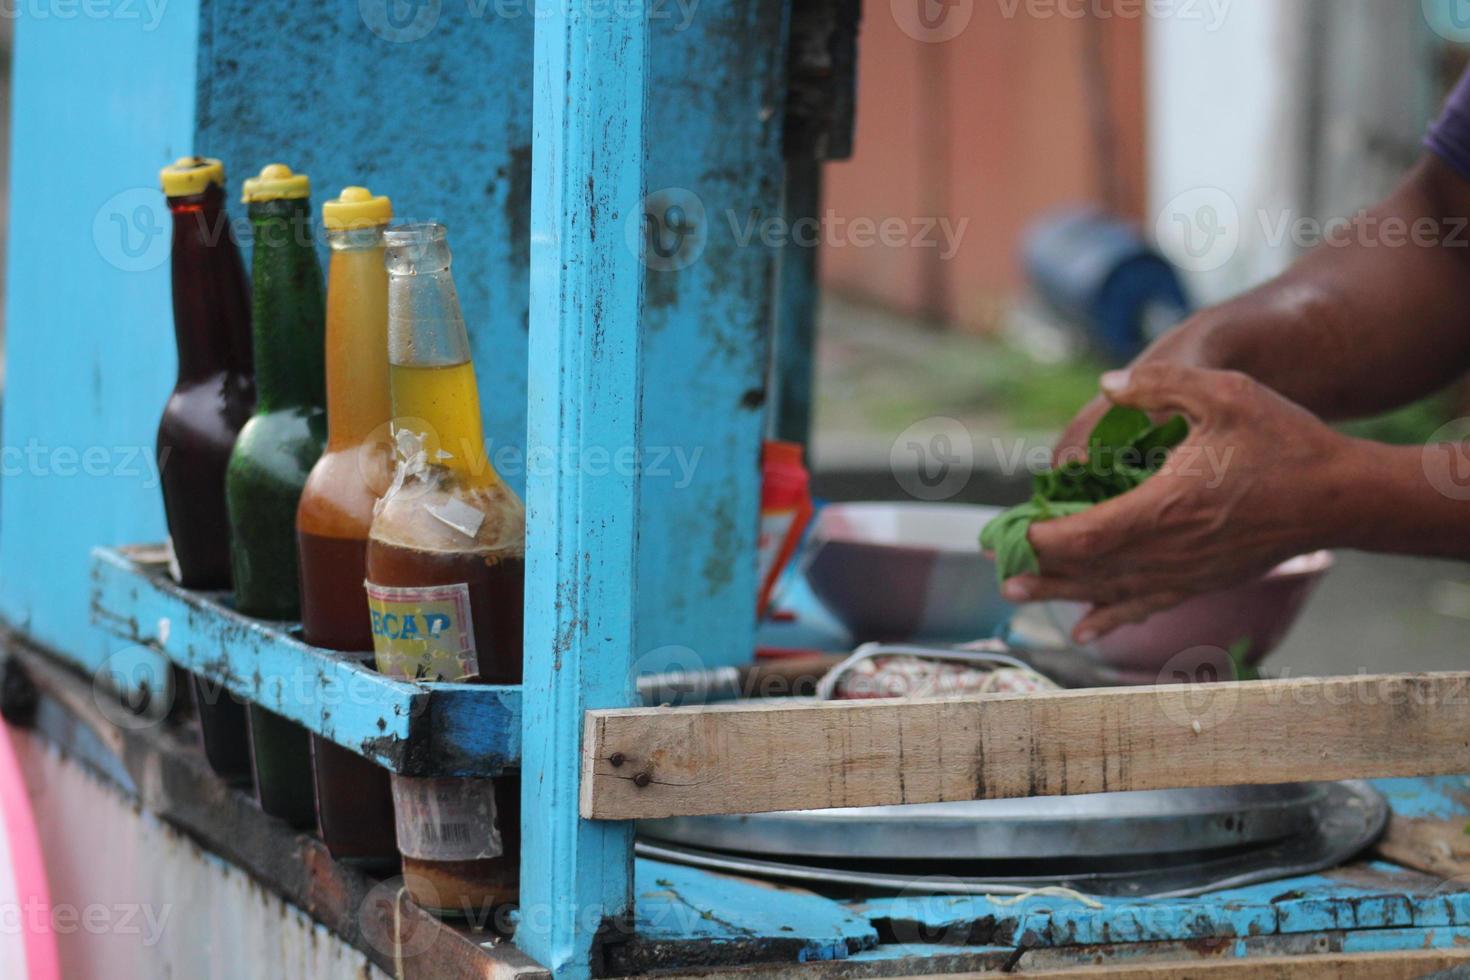 un penjual mie ayam bakso indonesio o un vendedor de fideos con pollo y albóndigas que prepara fideos con pollo para el comprador. foto